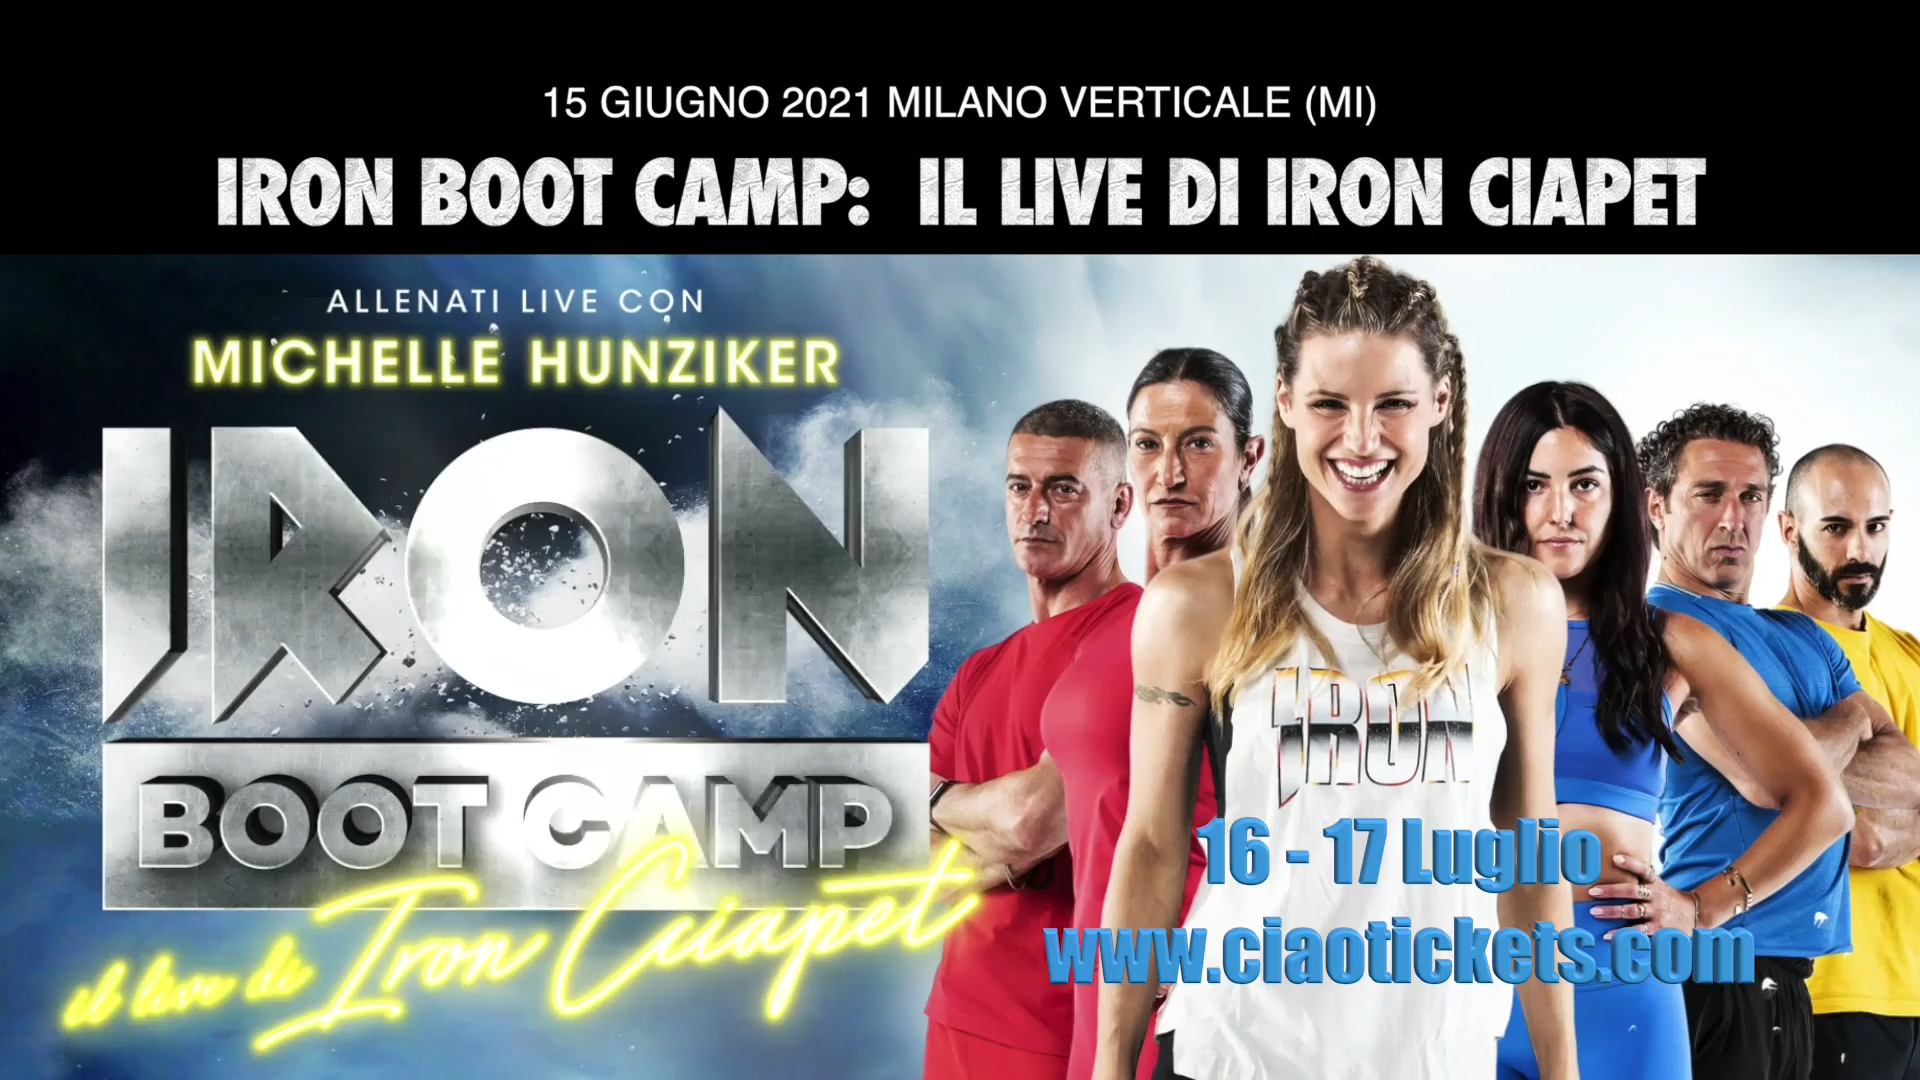 IRON BOOT CAMP: Allenati live con Michelle Hunziker